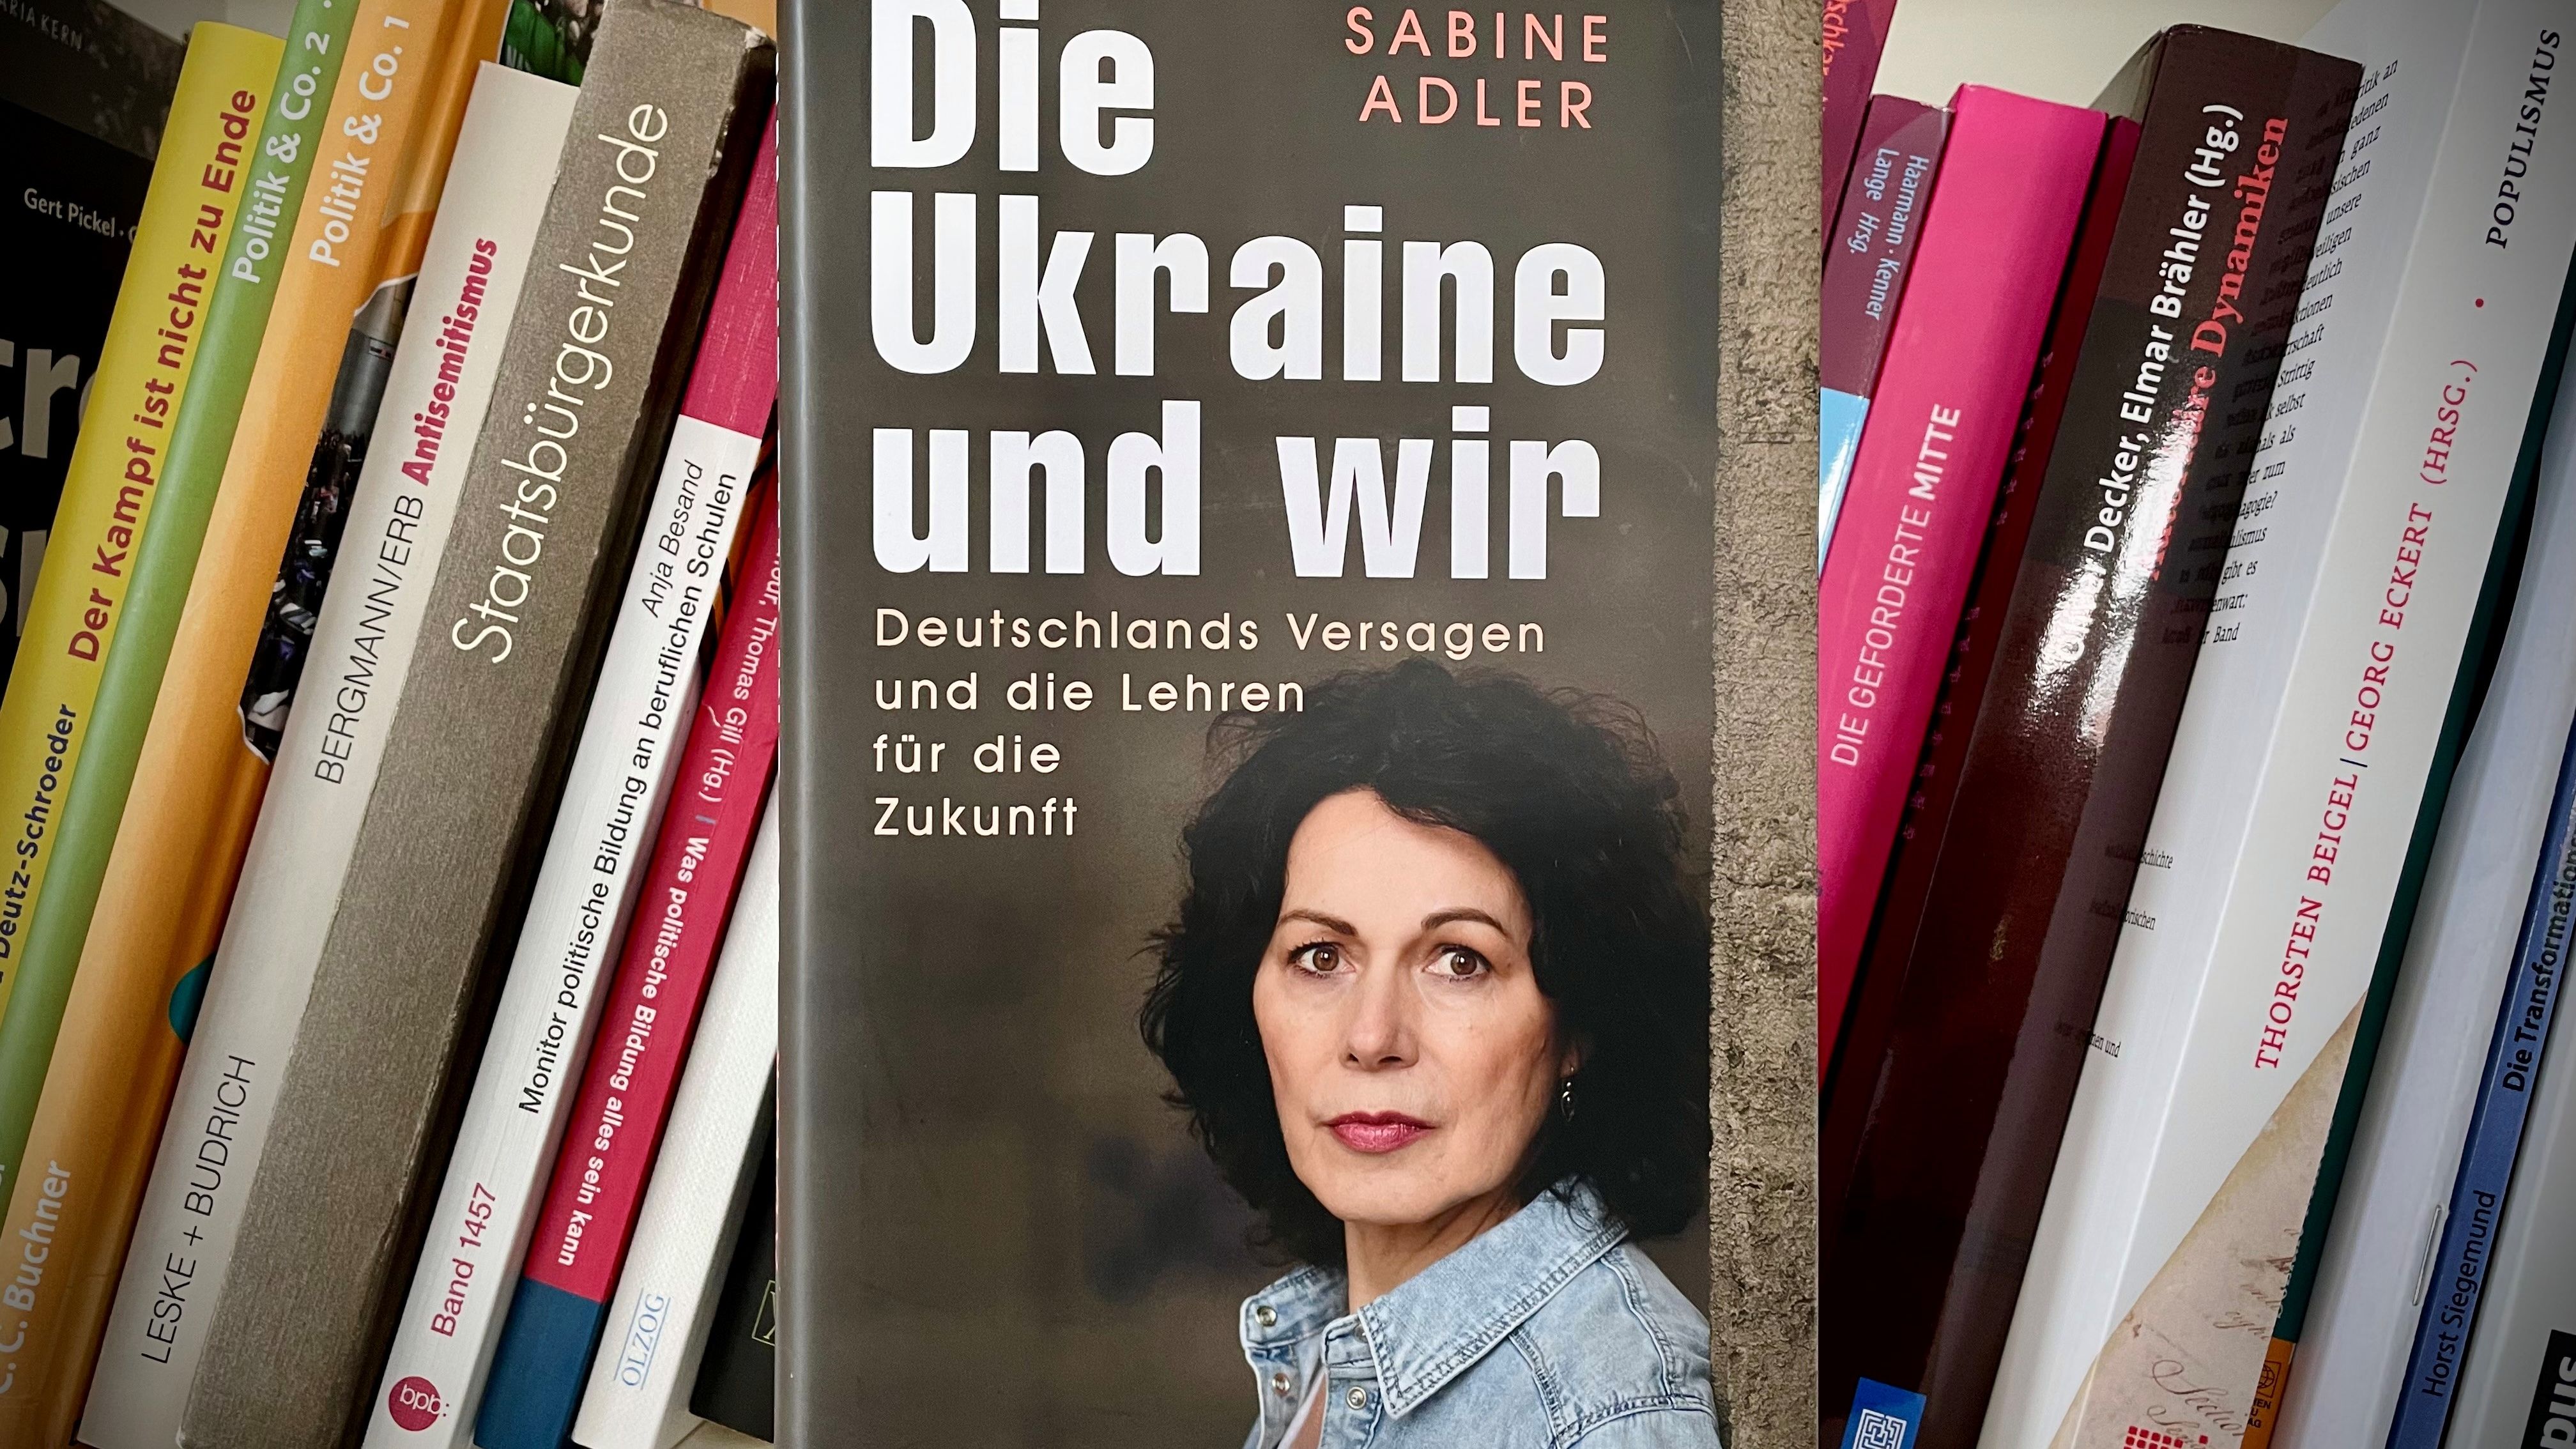 Buchcover von Sabine Adler mit dem Titel "Die Ukraine und wir", verlegt von Ch.Links.